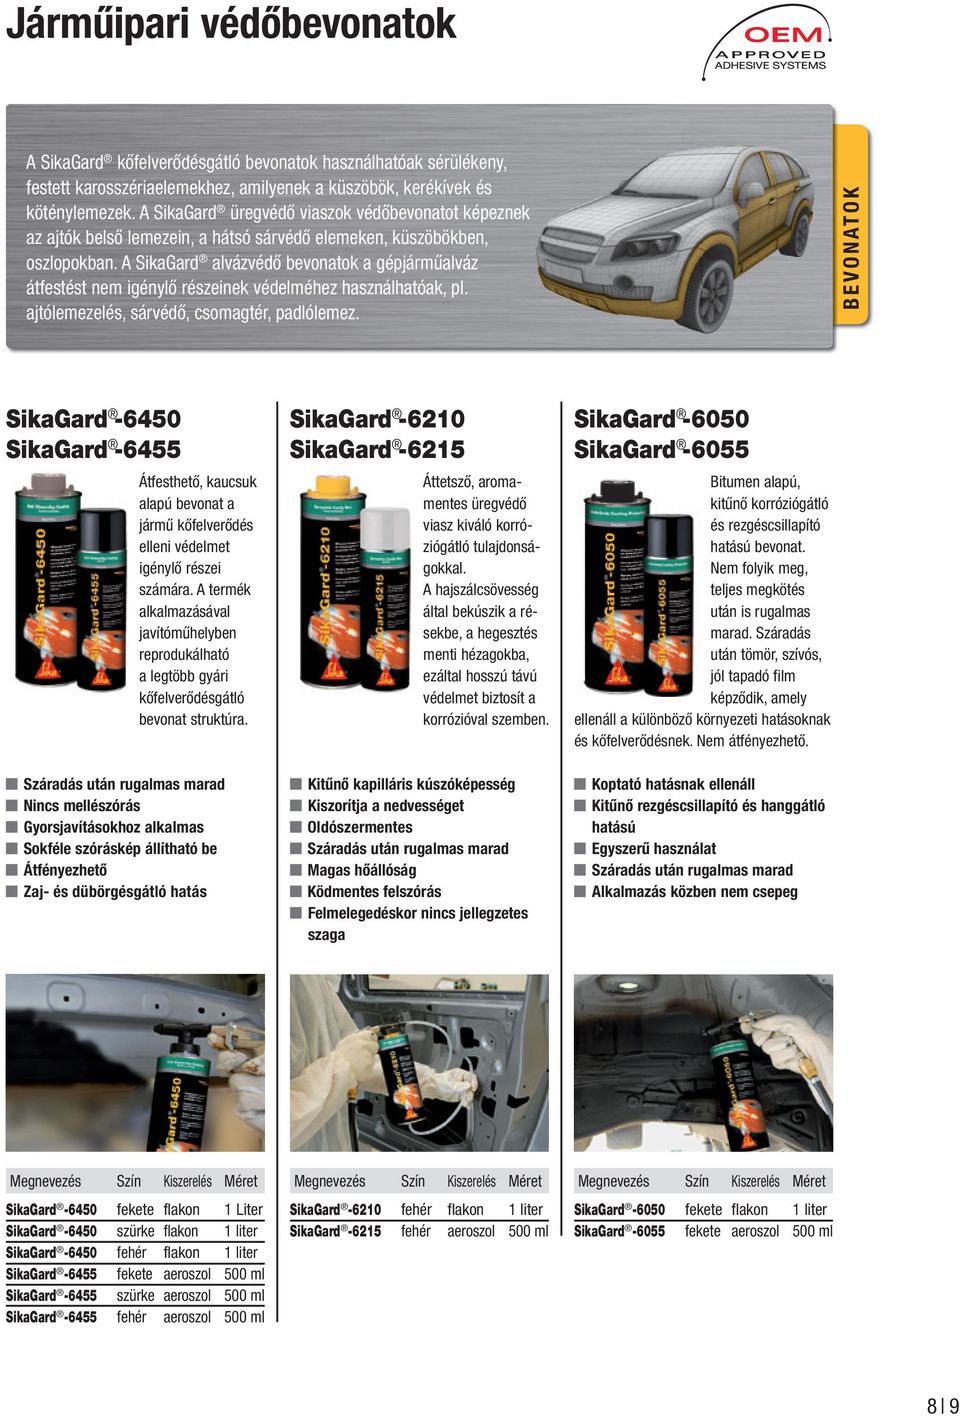 A SikaGard alvázvédő bevonatok a gépjárműalváz átfestést nem igénylő részeinek védelméhez használhatóak, pl. ajtólemezelés, sárvédő, csomagtér, padlólemez.